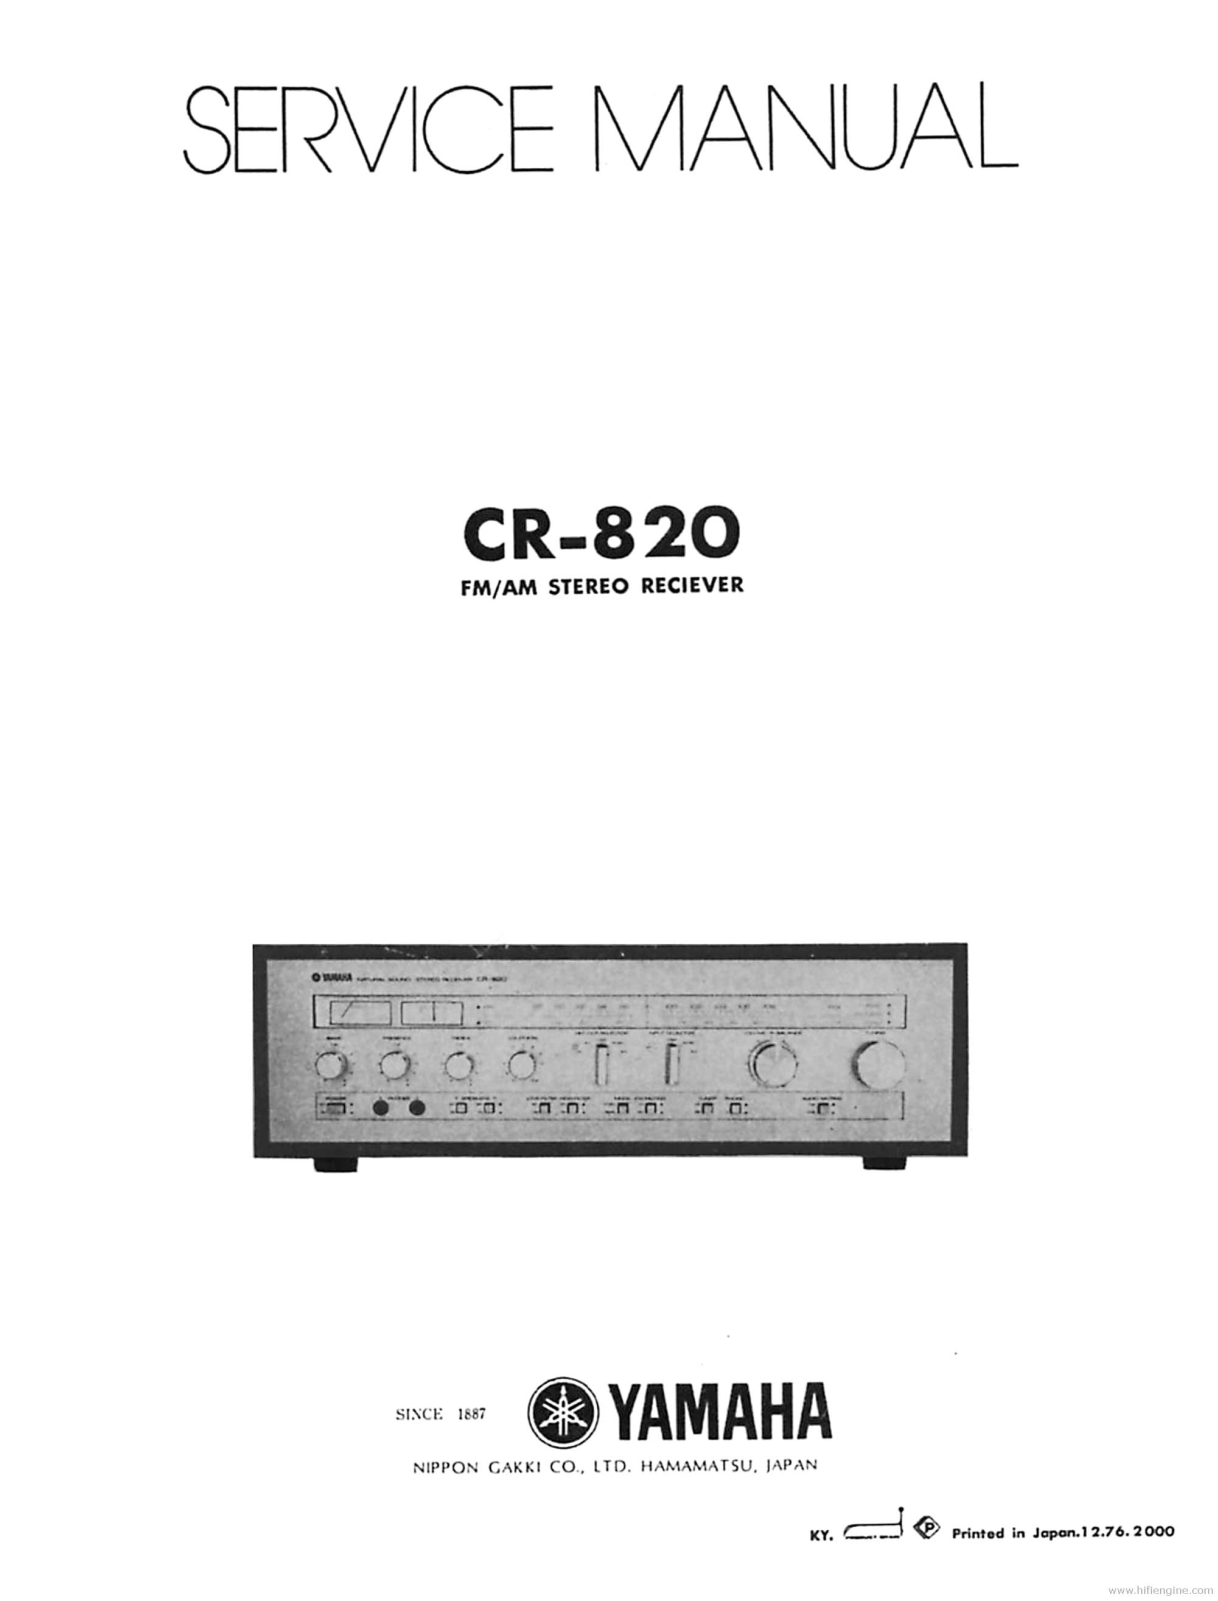 Yamaha CR-820 Service Manual